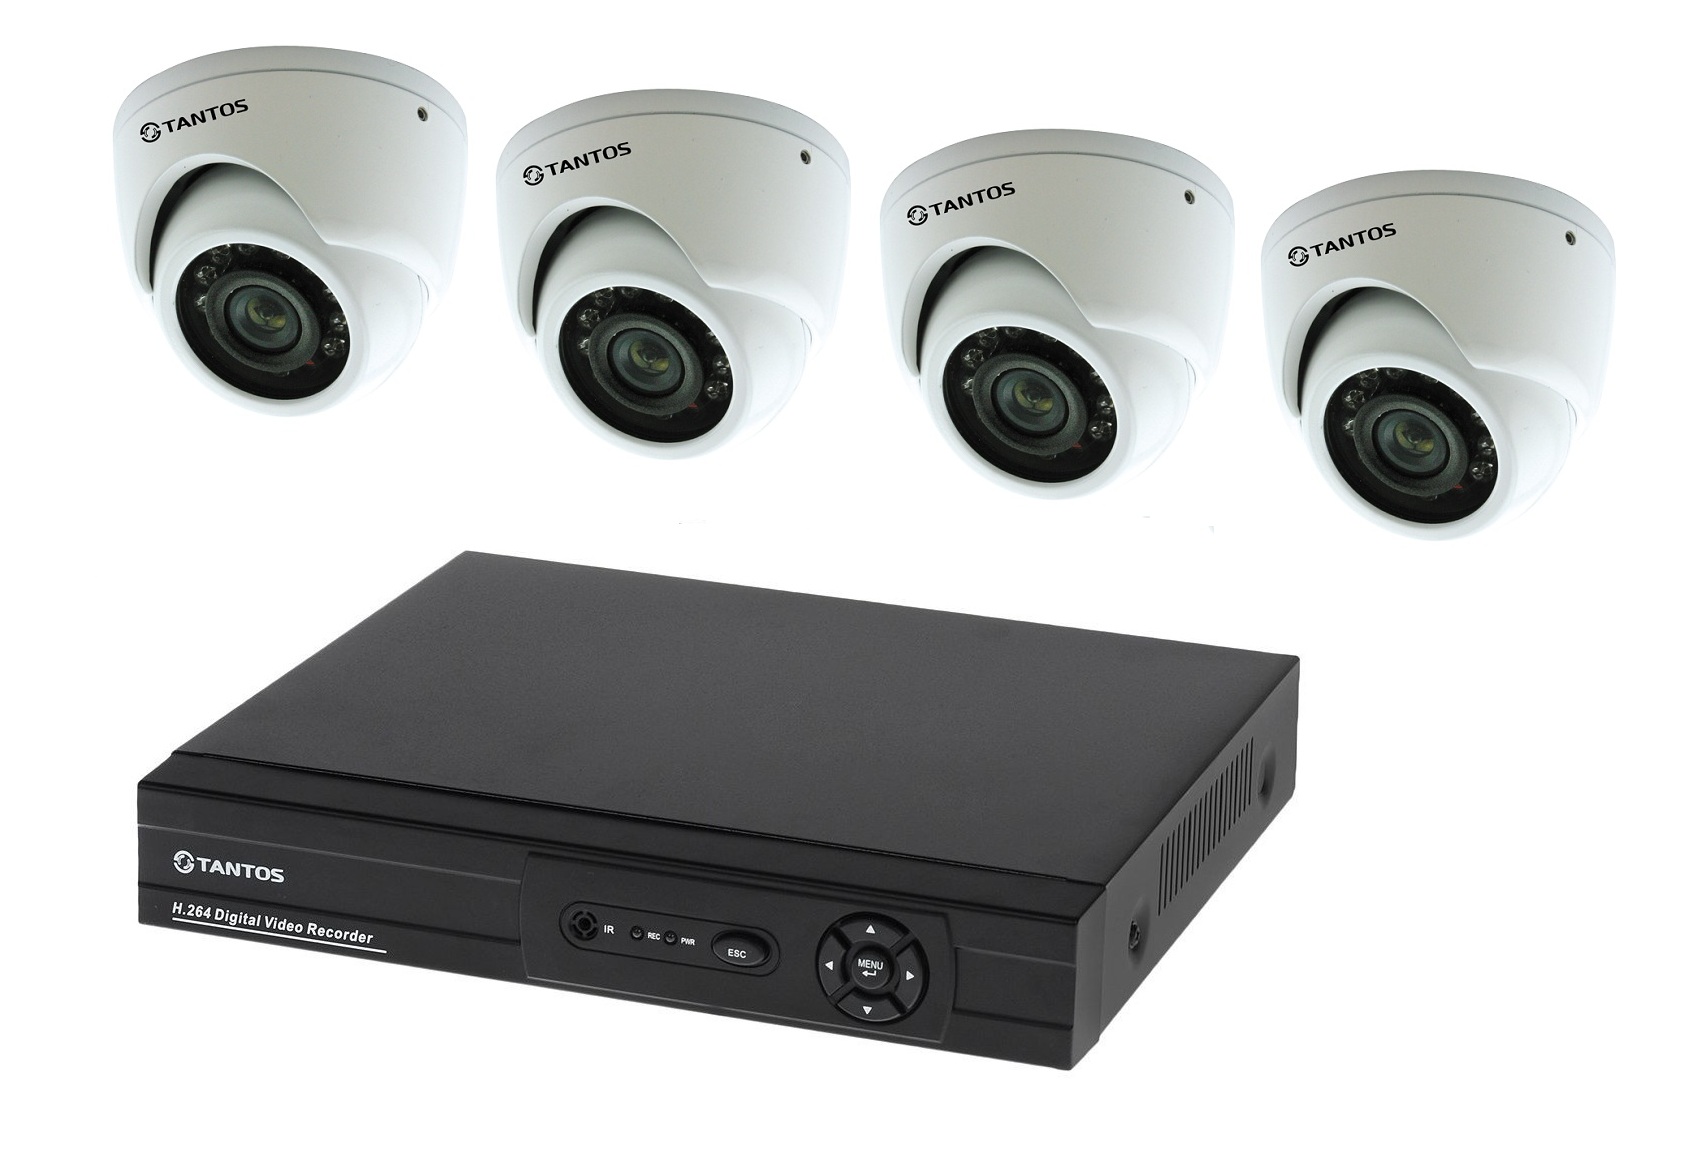 Дон регистратор. Комплект видеонаблюдения "tantos Страж-4". Камера видеонаблюдения XPX комплект н.264. Комплект видеонаблюдения DVR 7204c1 с 4 видеокамерами. Комплект видеонаблюдения установи сам Sony 13кам.